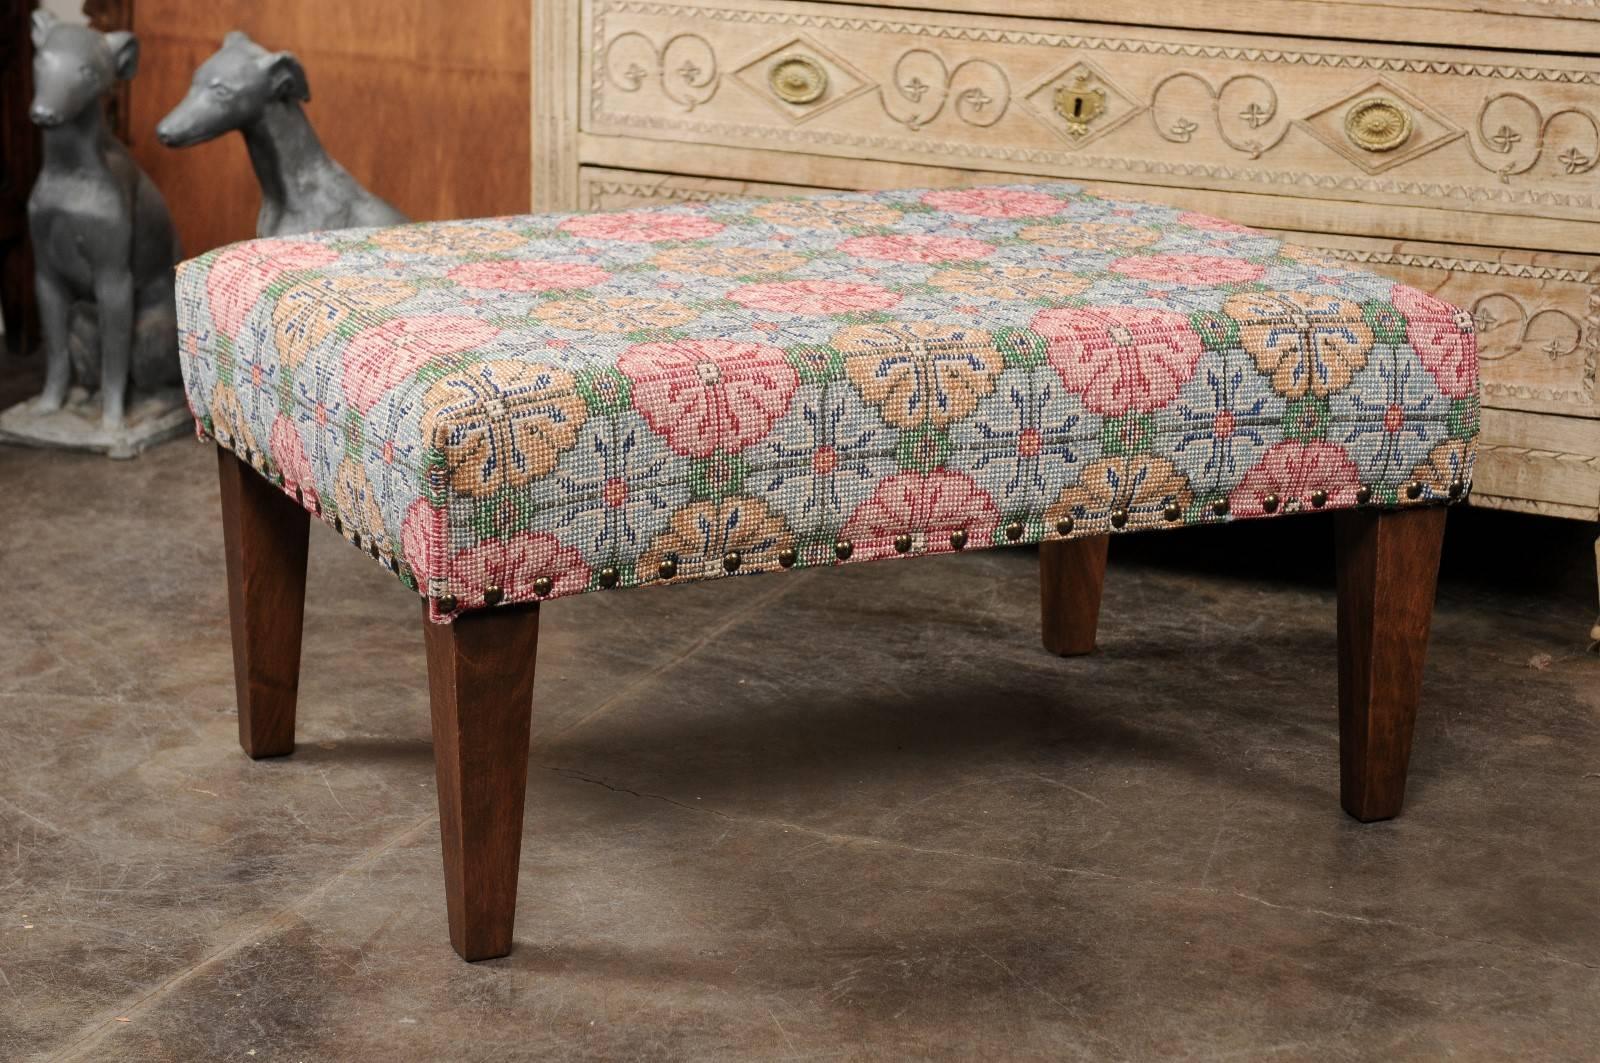 Ottoman turc rembourré à motifs floraux datant du milieu du siècle dernier, monté sur des pieds fuselés en bois. Ce pouf présente une assise rectangulaire, recouverte d'un tapis de laine turque vintage, orné de motifs floraux colorés allant du rose